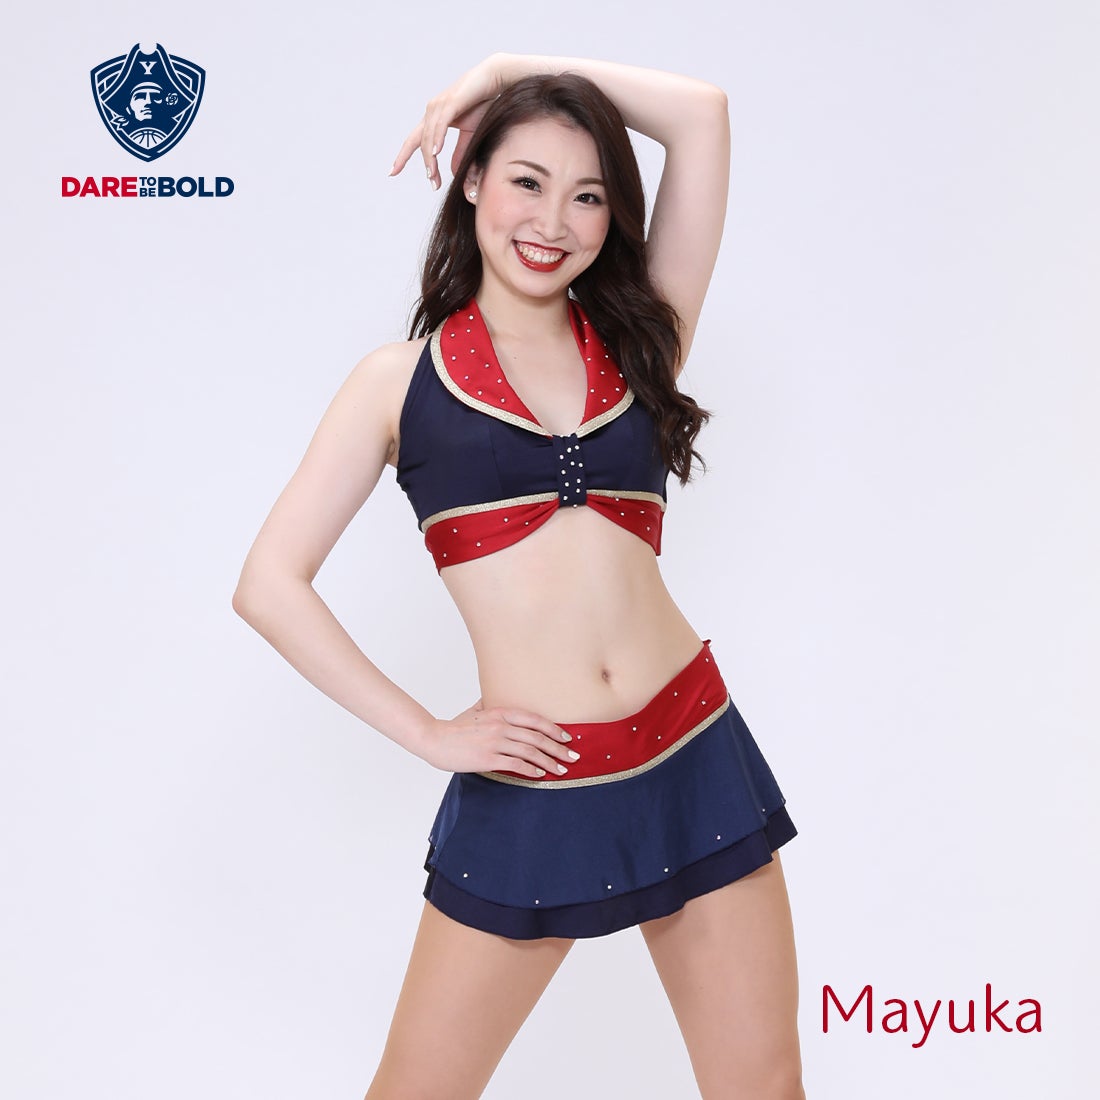 Mayuka